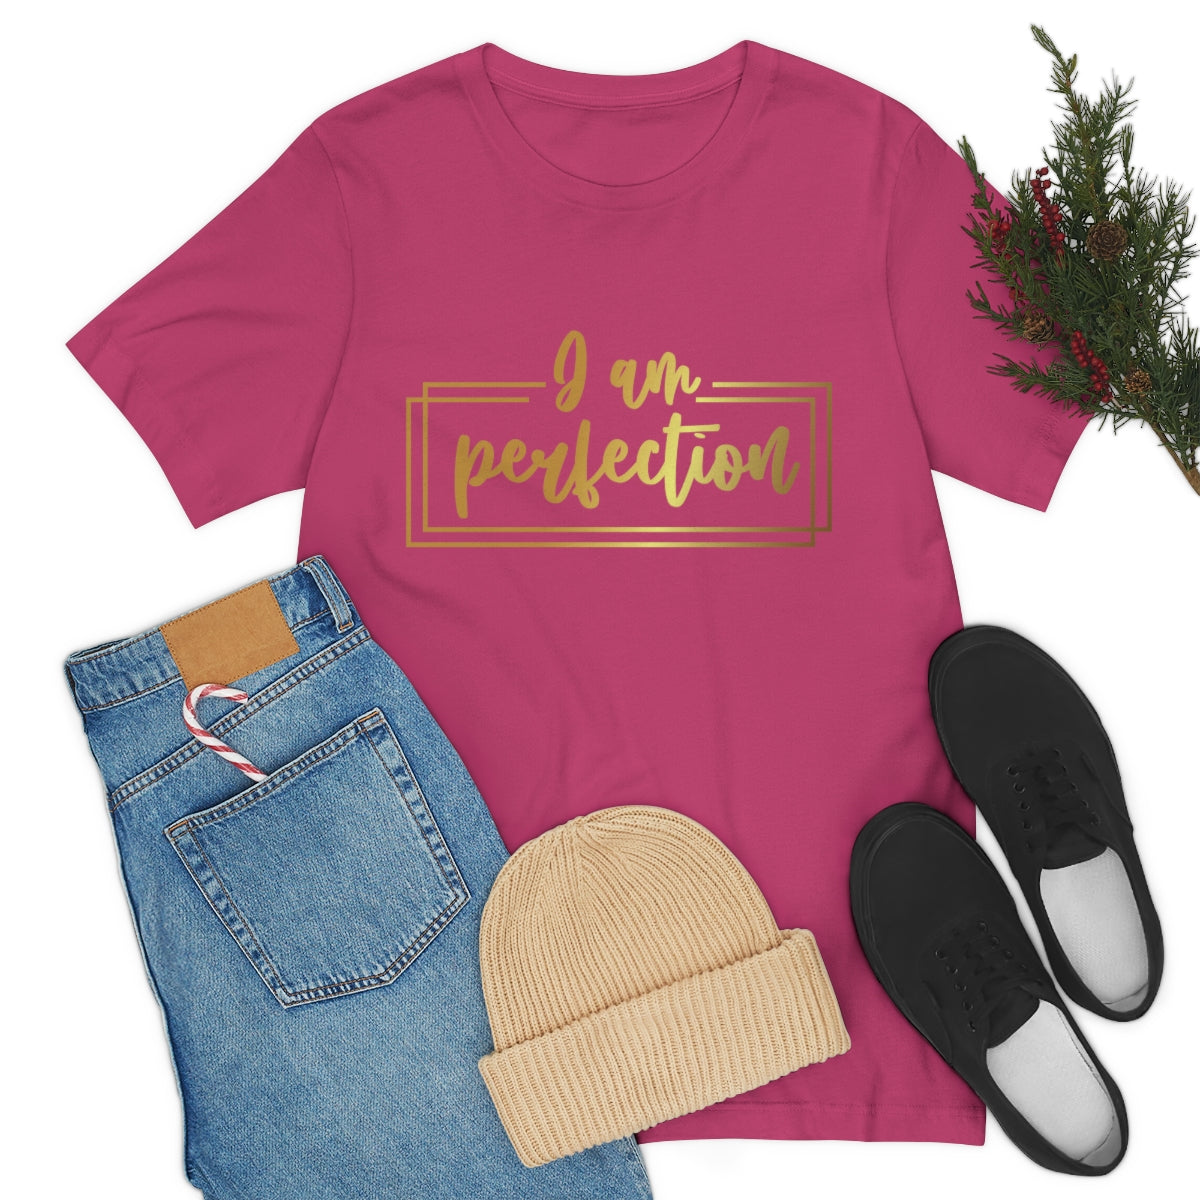 Affirmation Feminist Pro Choice T-Shirt Unisex Size, I am Perfection Printify